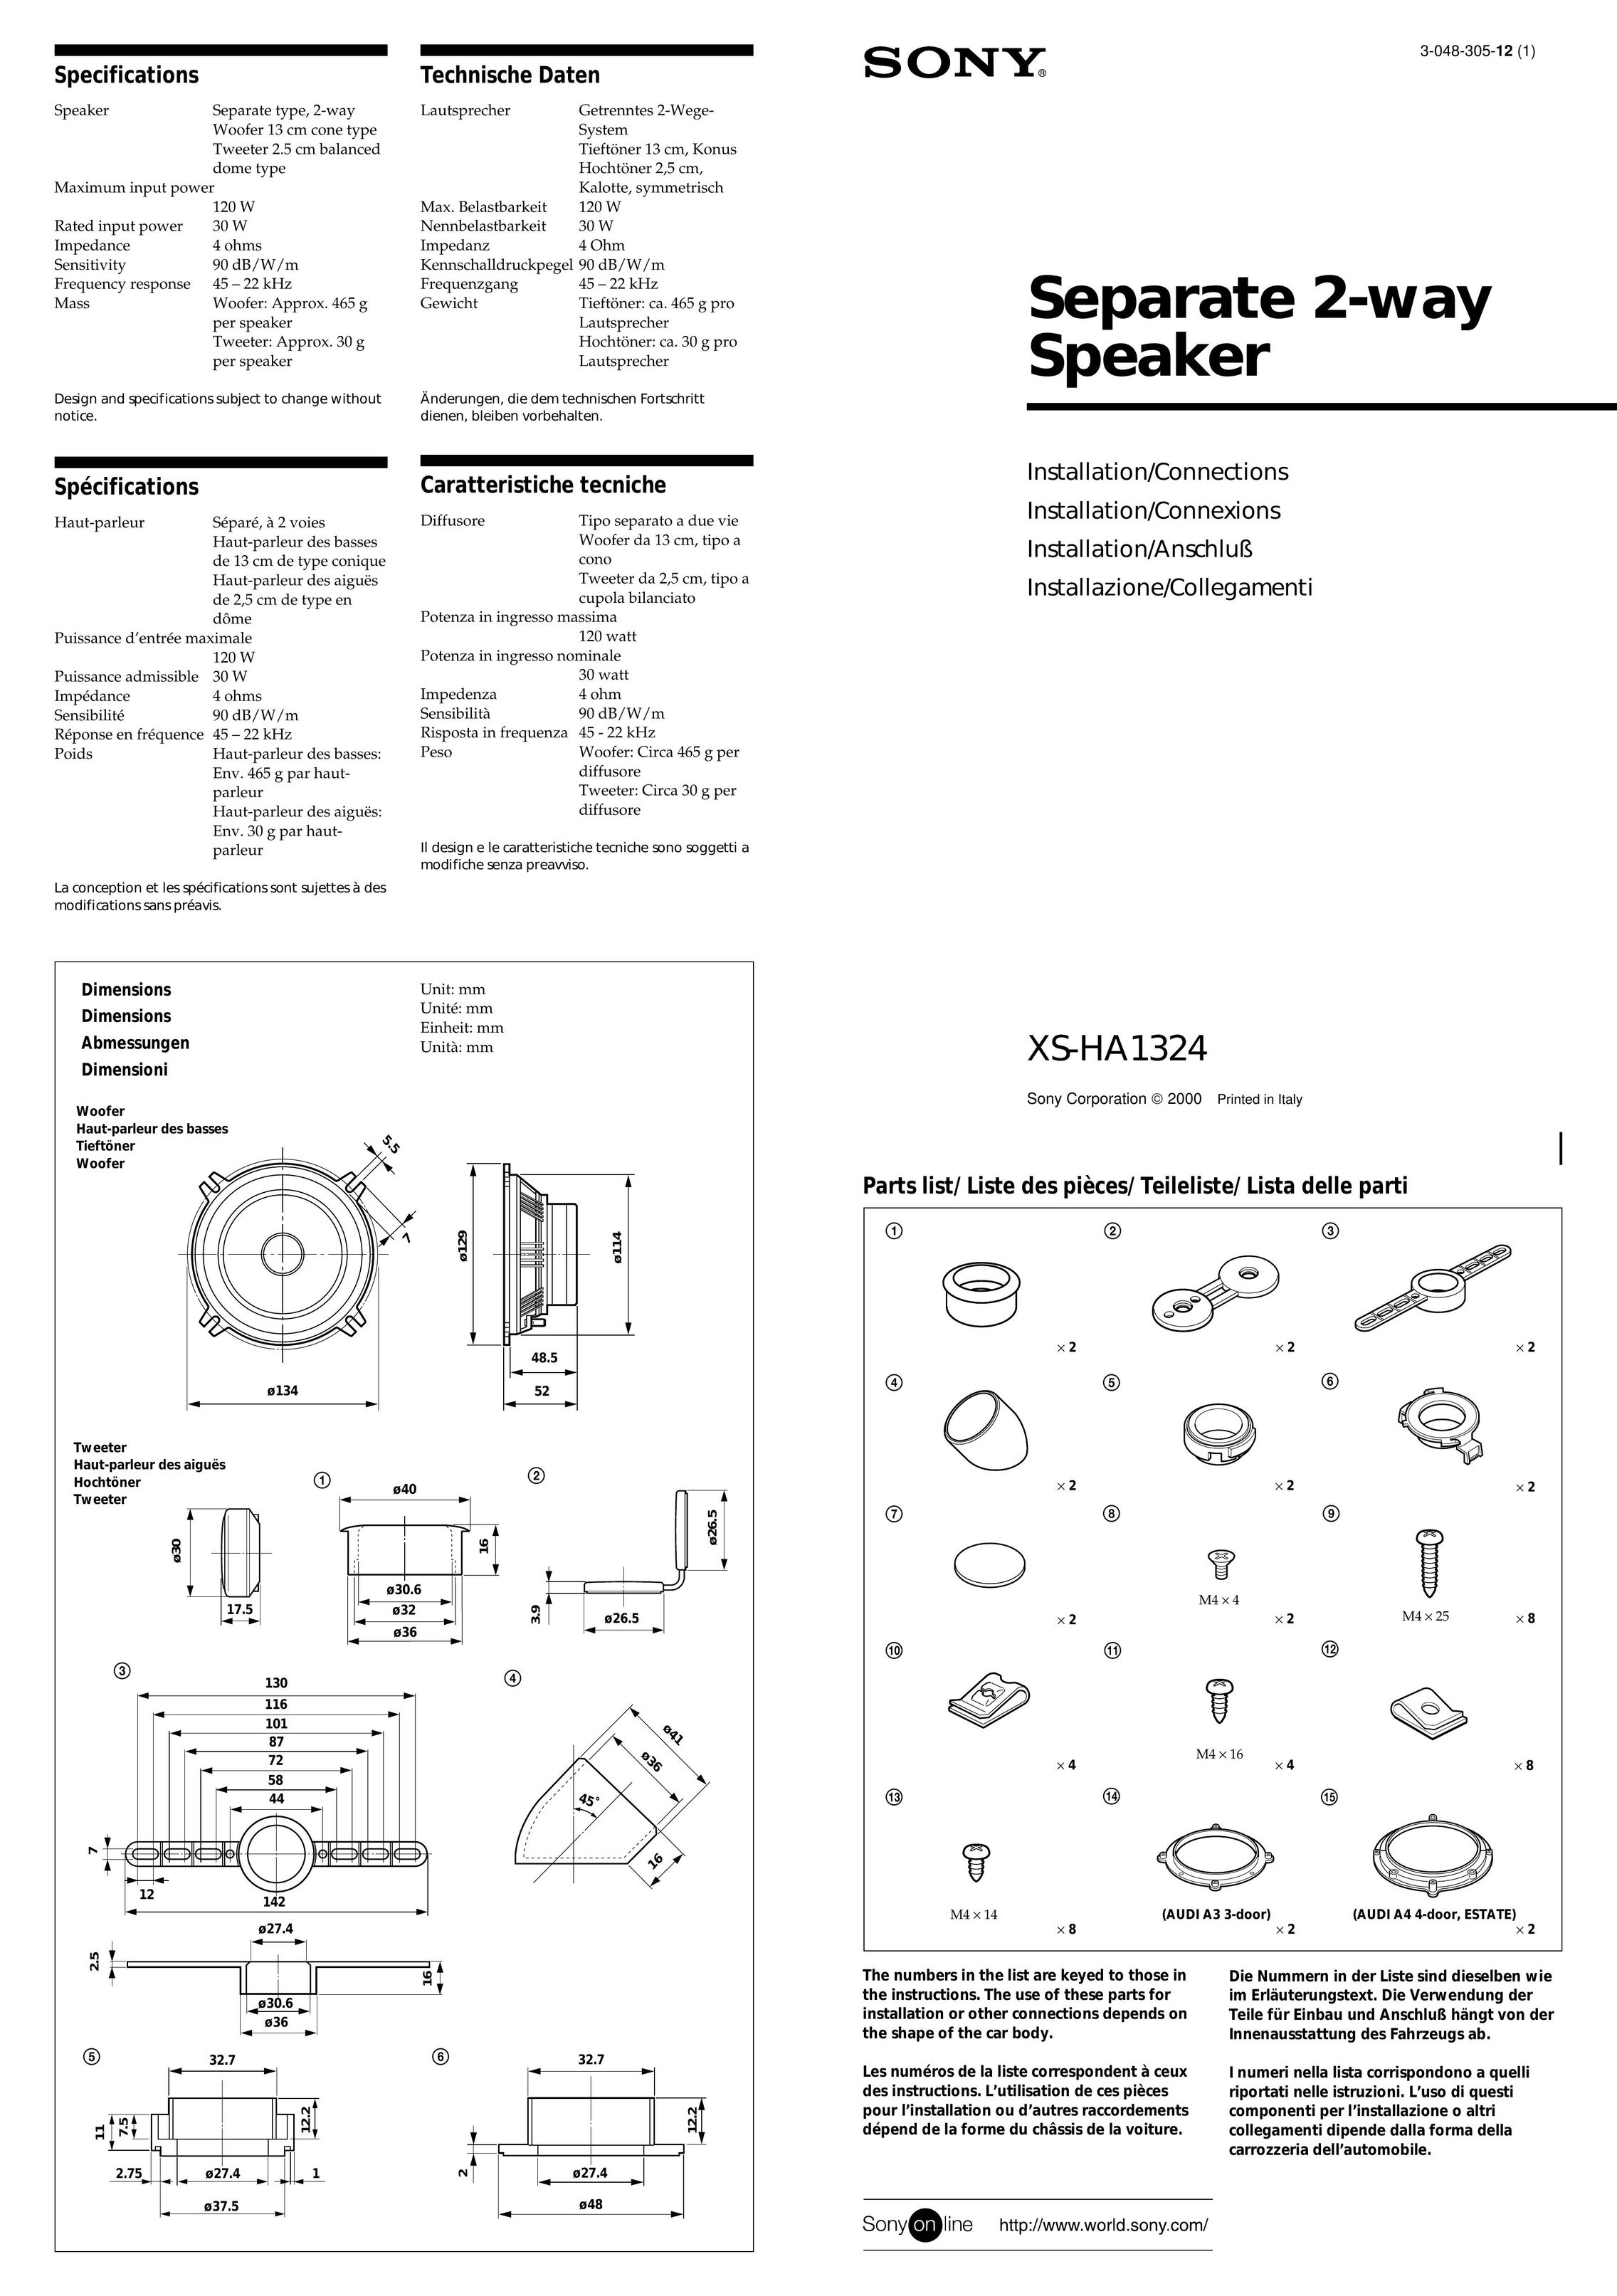 Sony XS-HA1324 Car Speaker User Manual